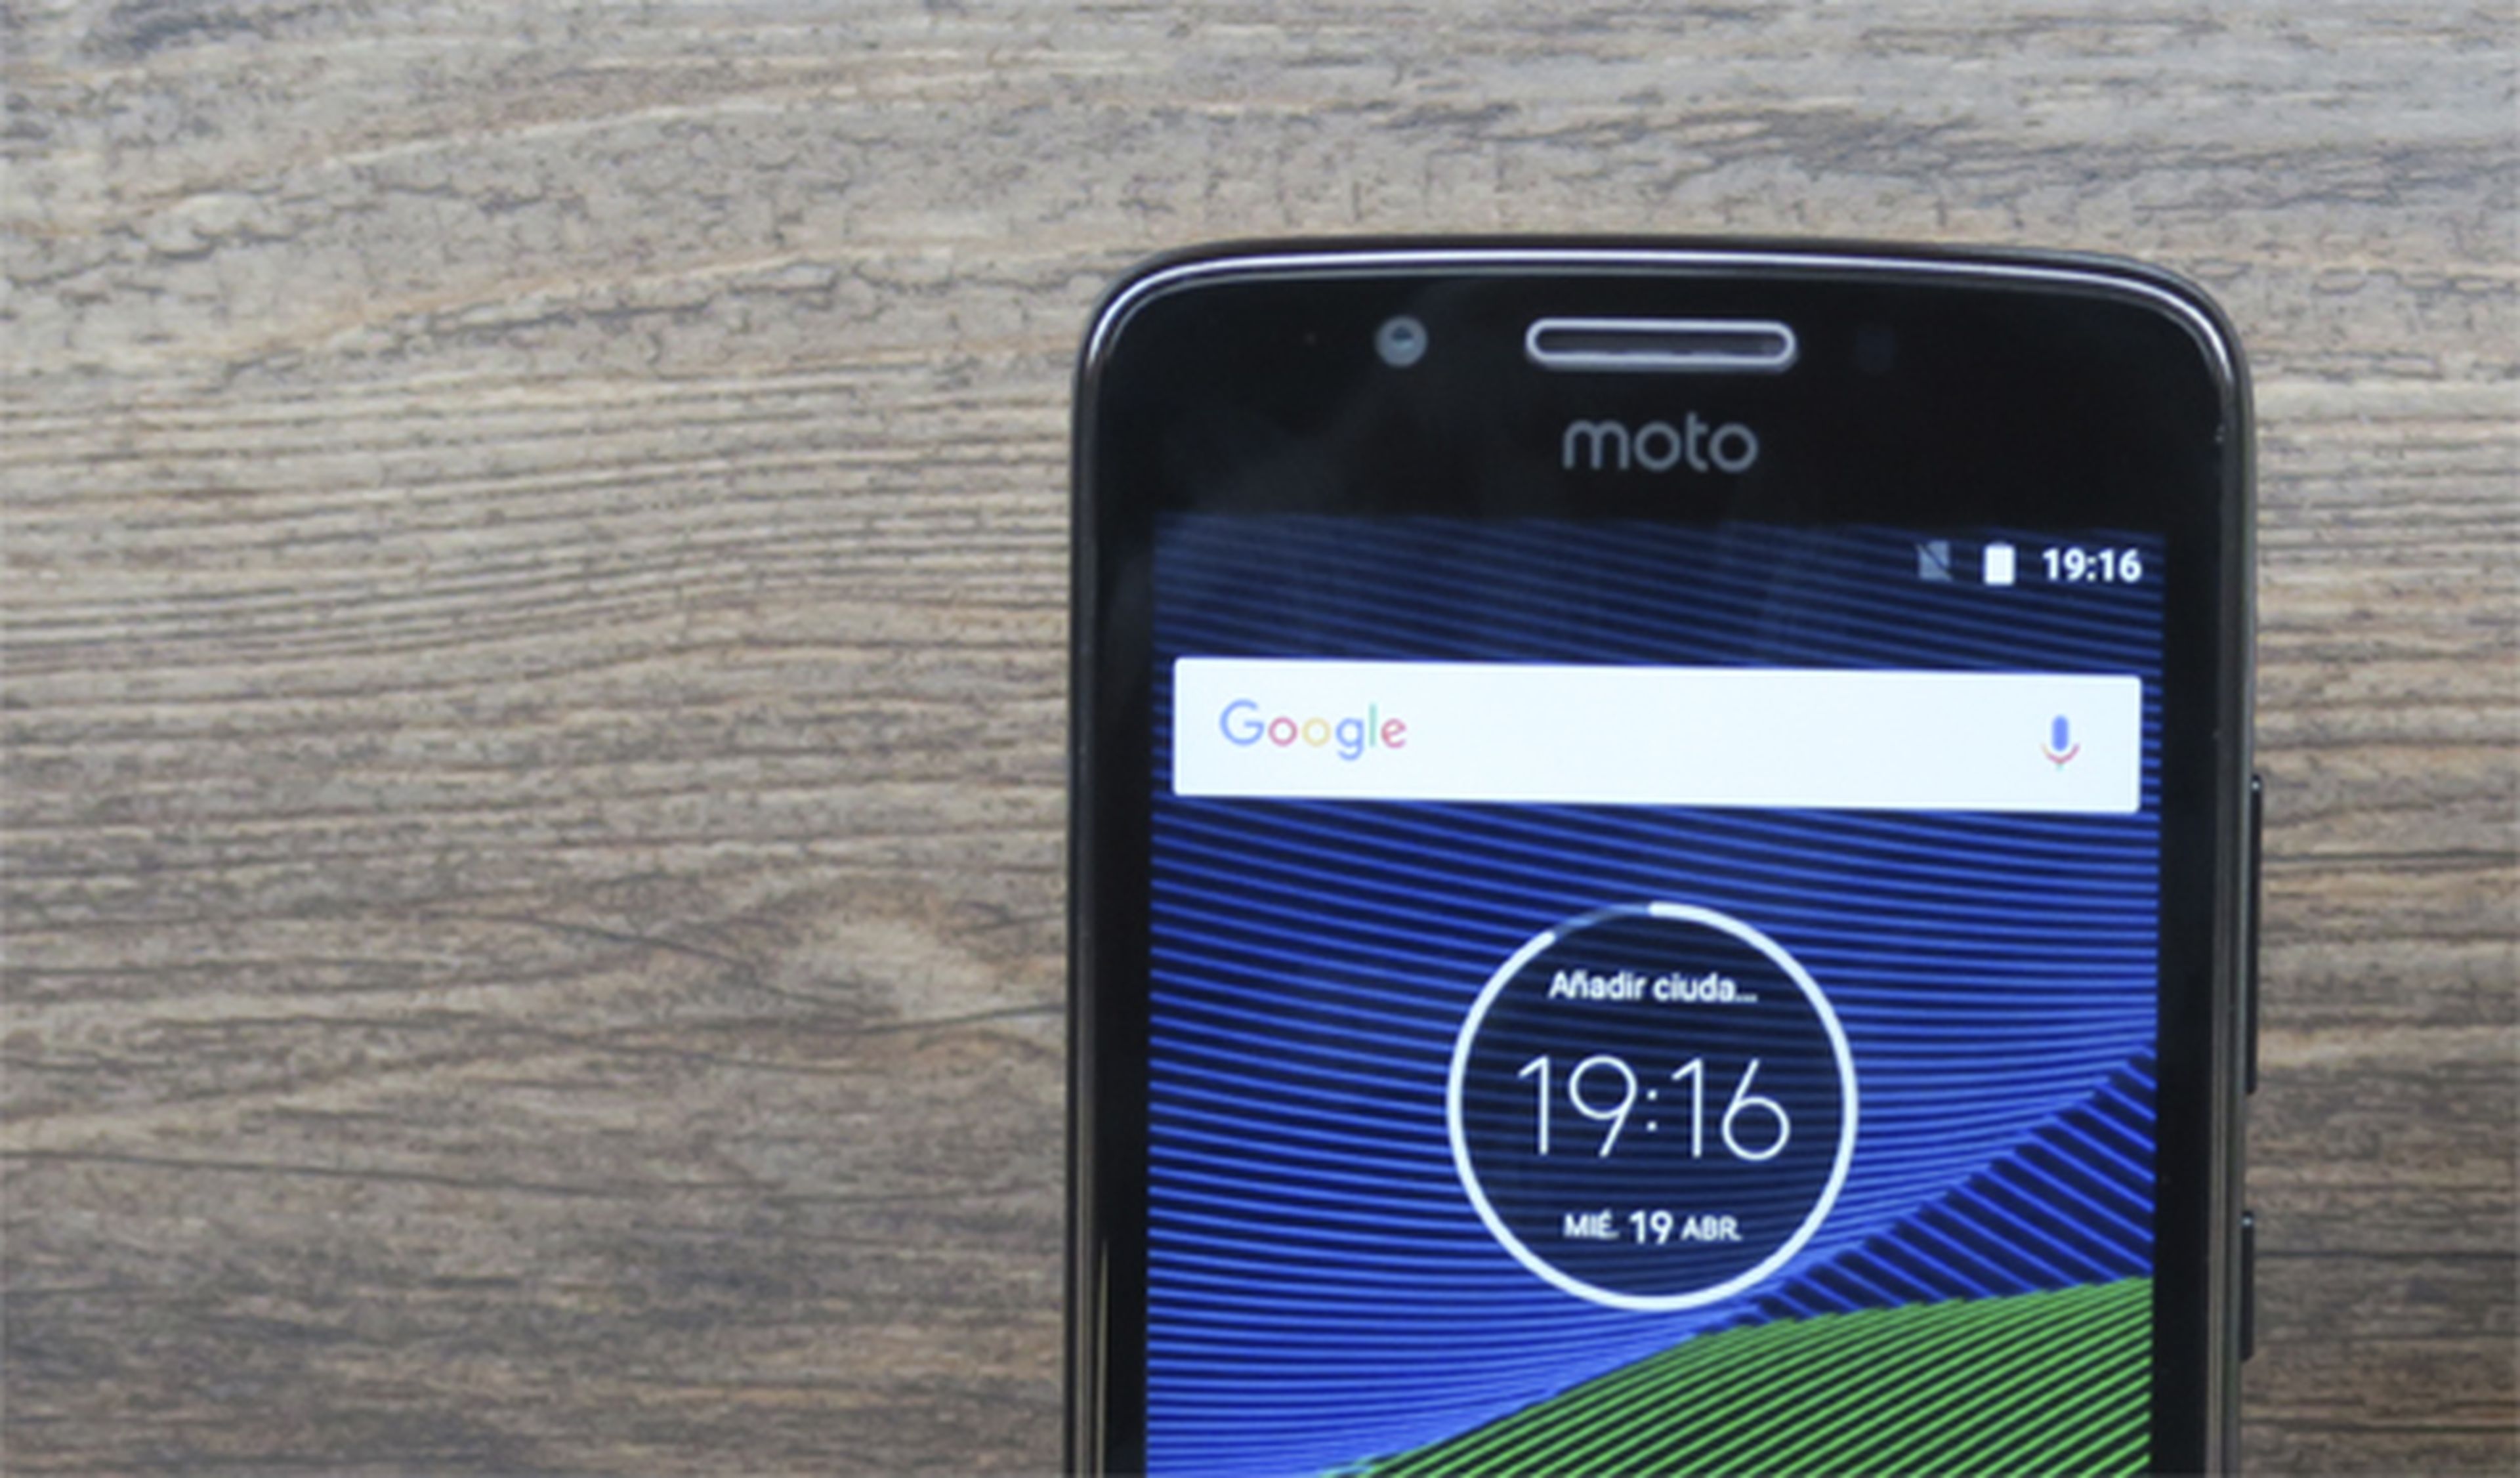 Ahora comentemos qué tal es el rendimiento de este teléfono de Motorola